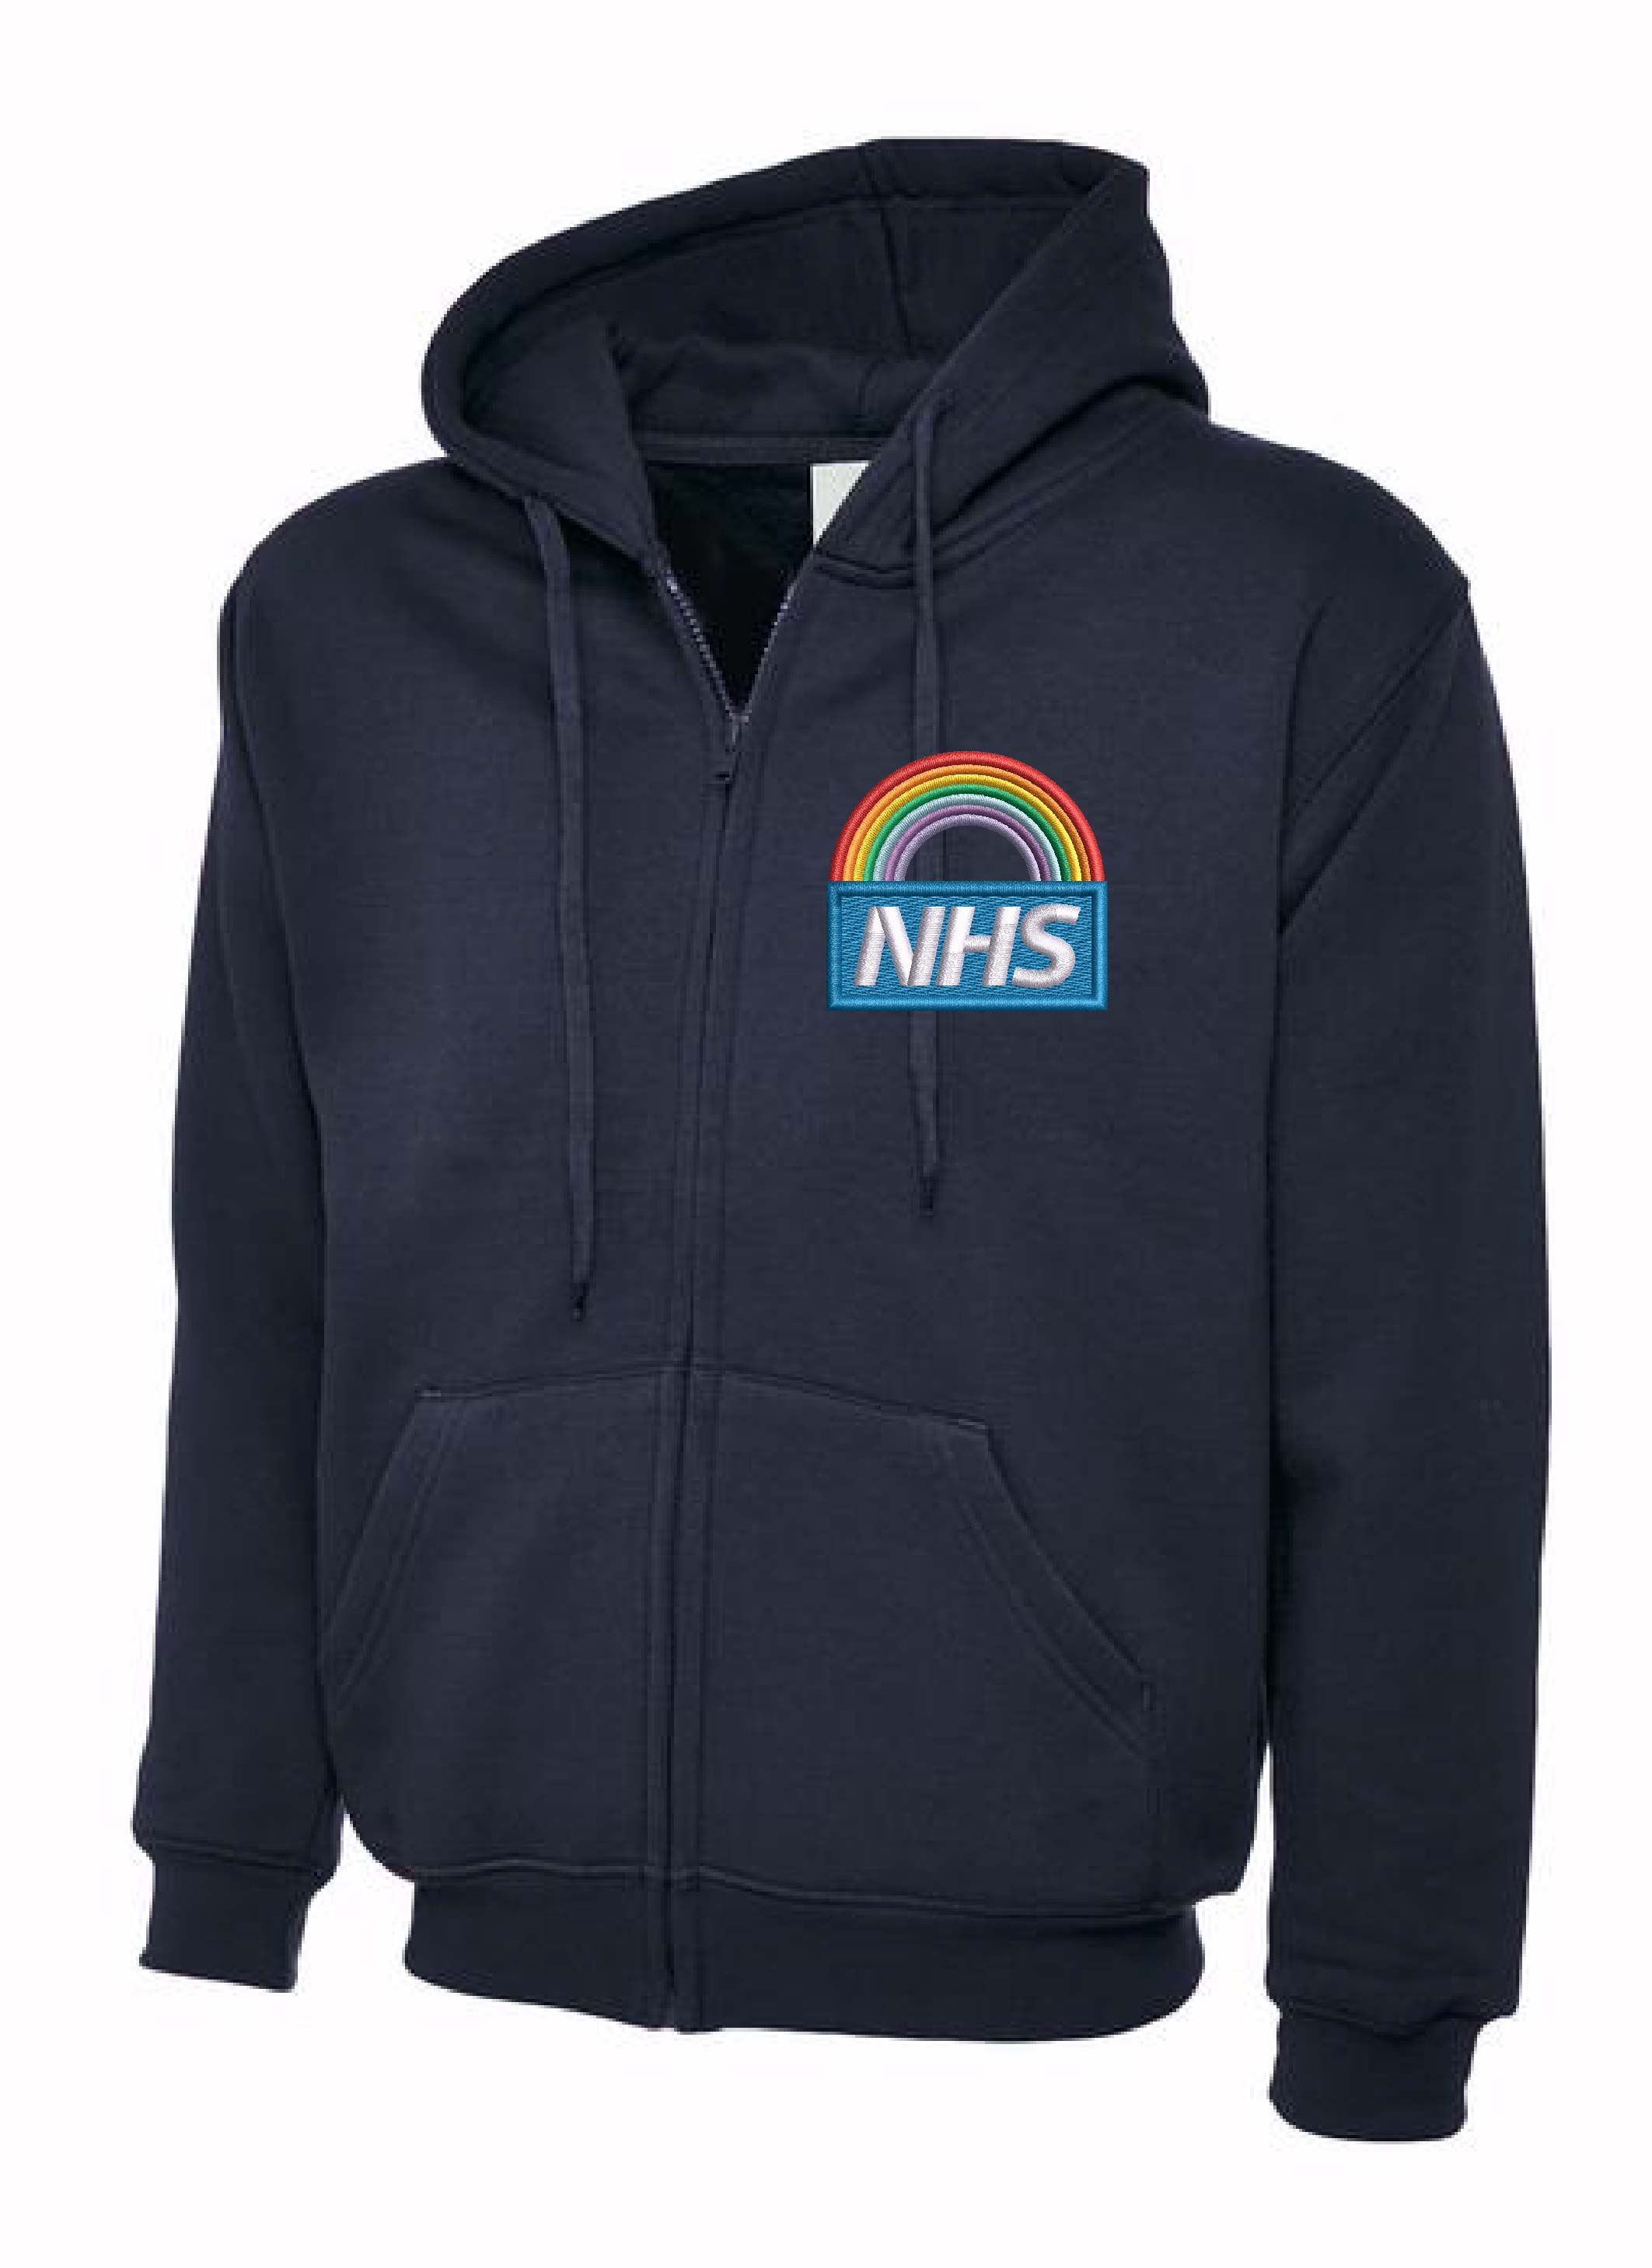 Personalised NHS Rainbow Hoodie